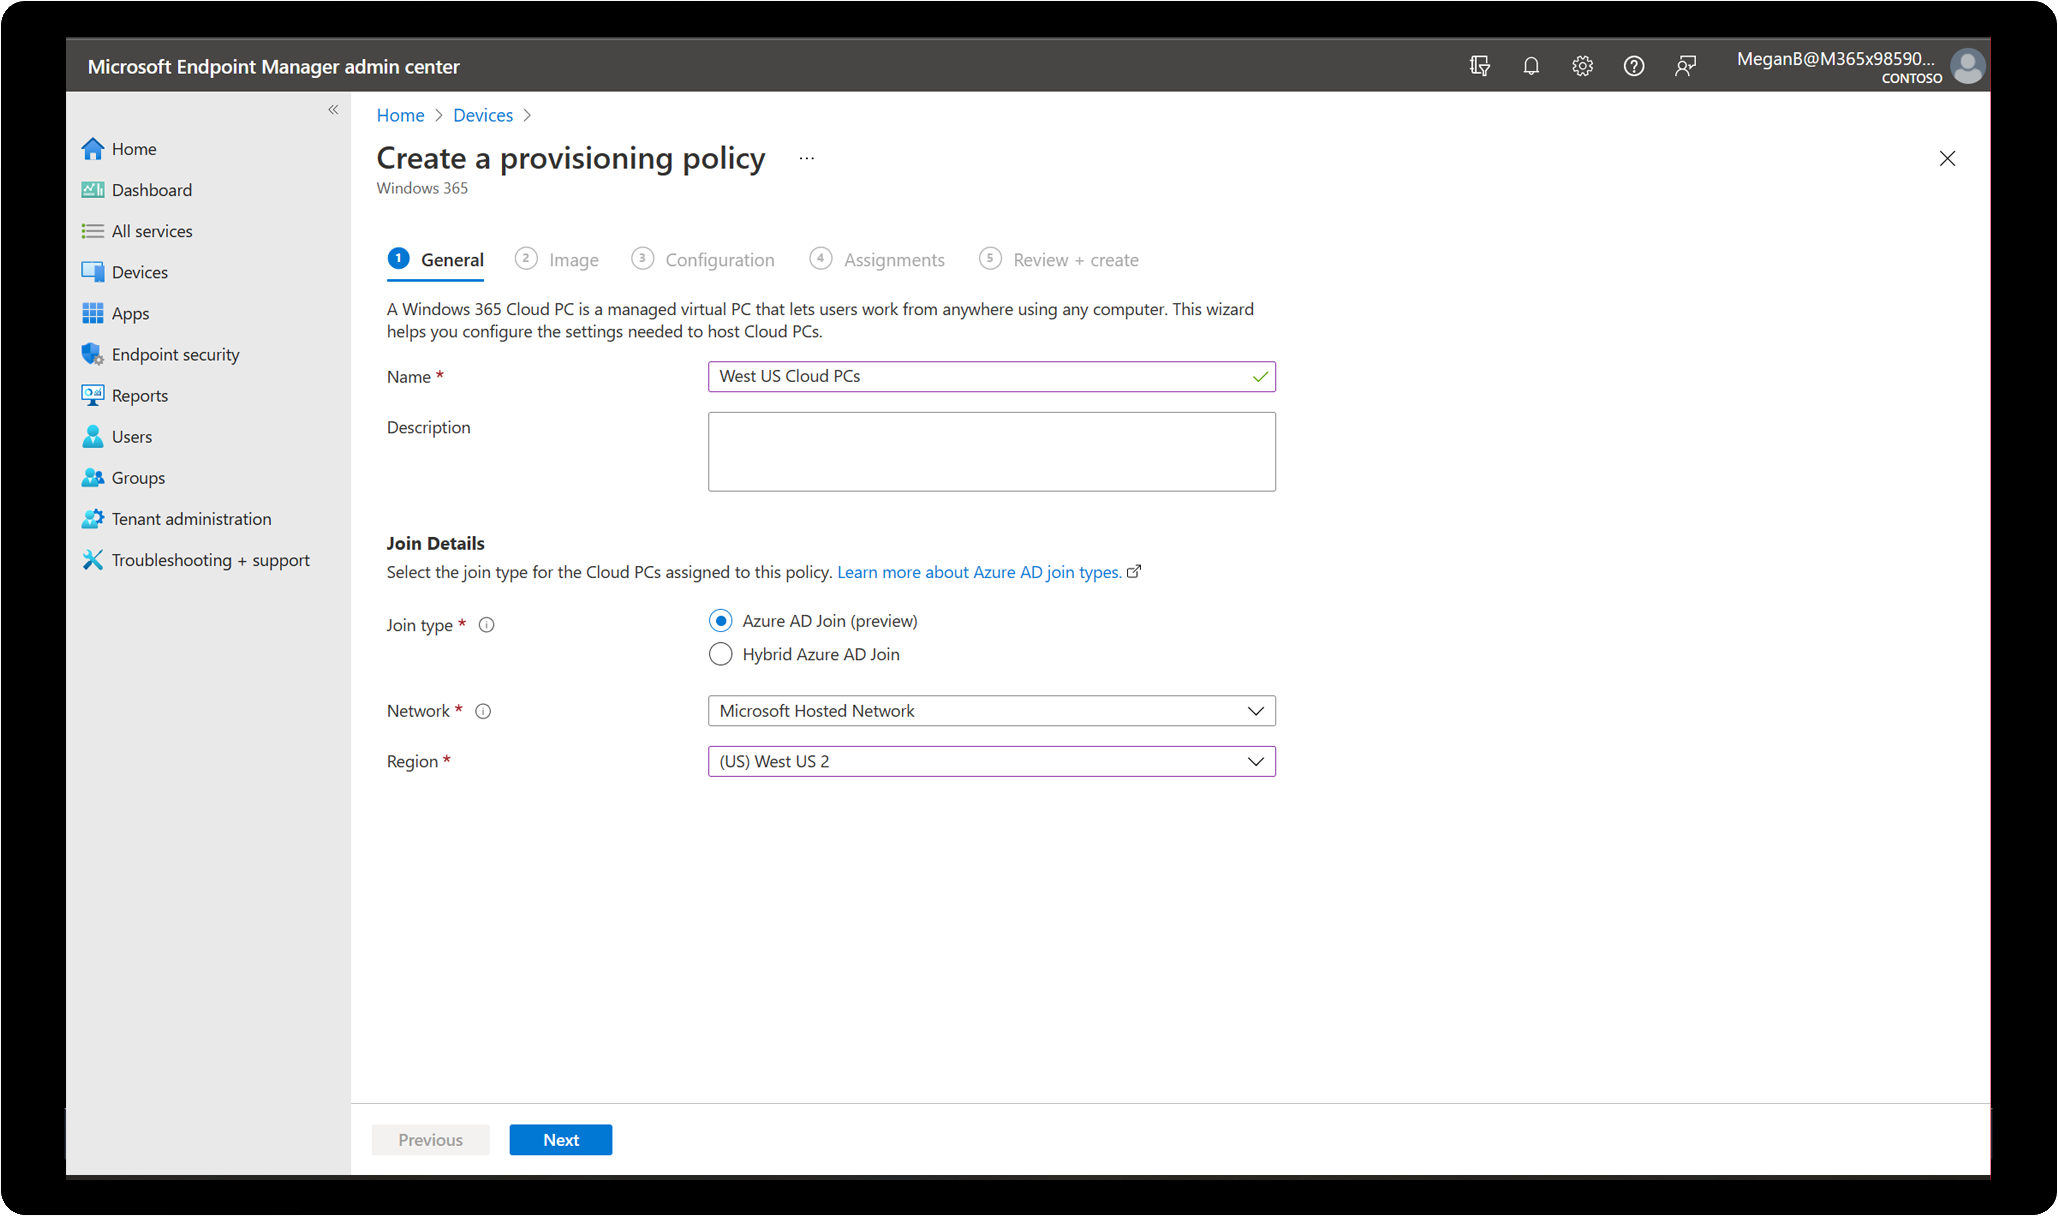 Interfaccia di amministrazione di Microsoft Endpoint Manager che mostra la procedura guidata utilizzata per configurare le impostazioni necessarie per ospitare i Cloud PC.